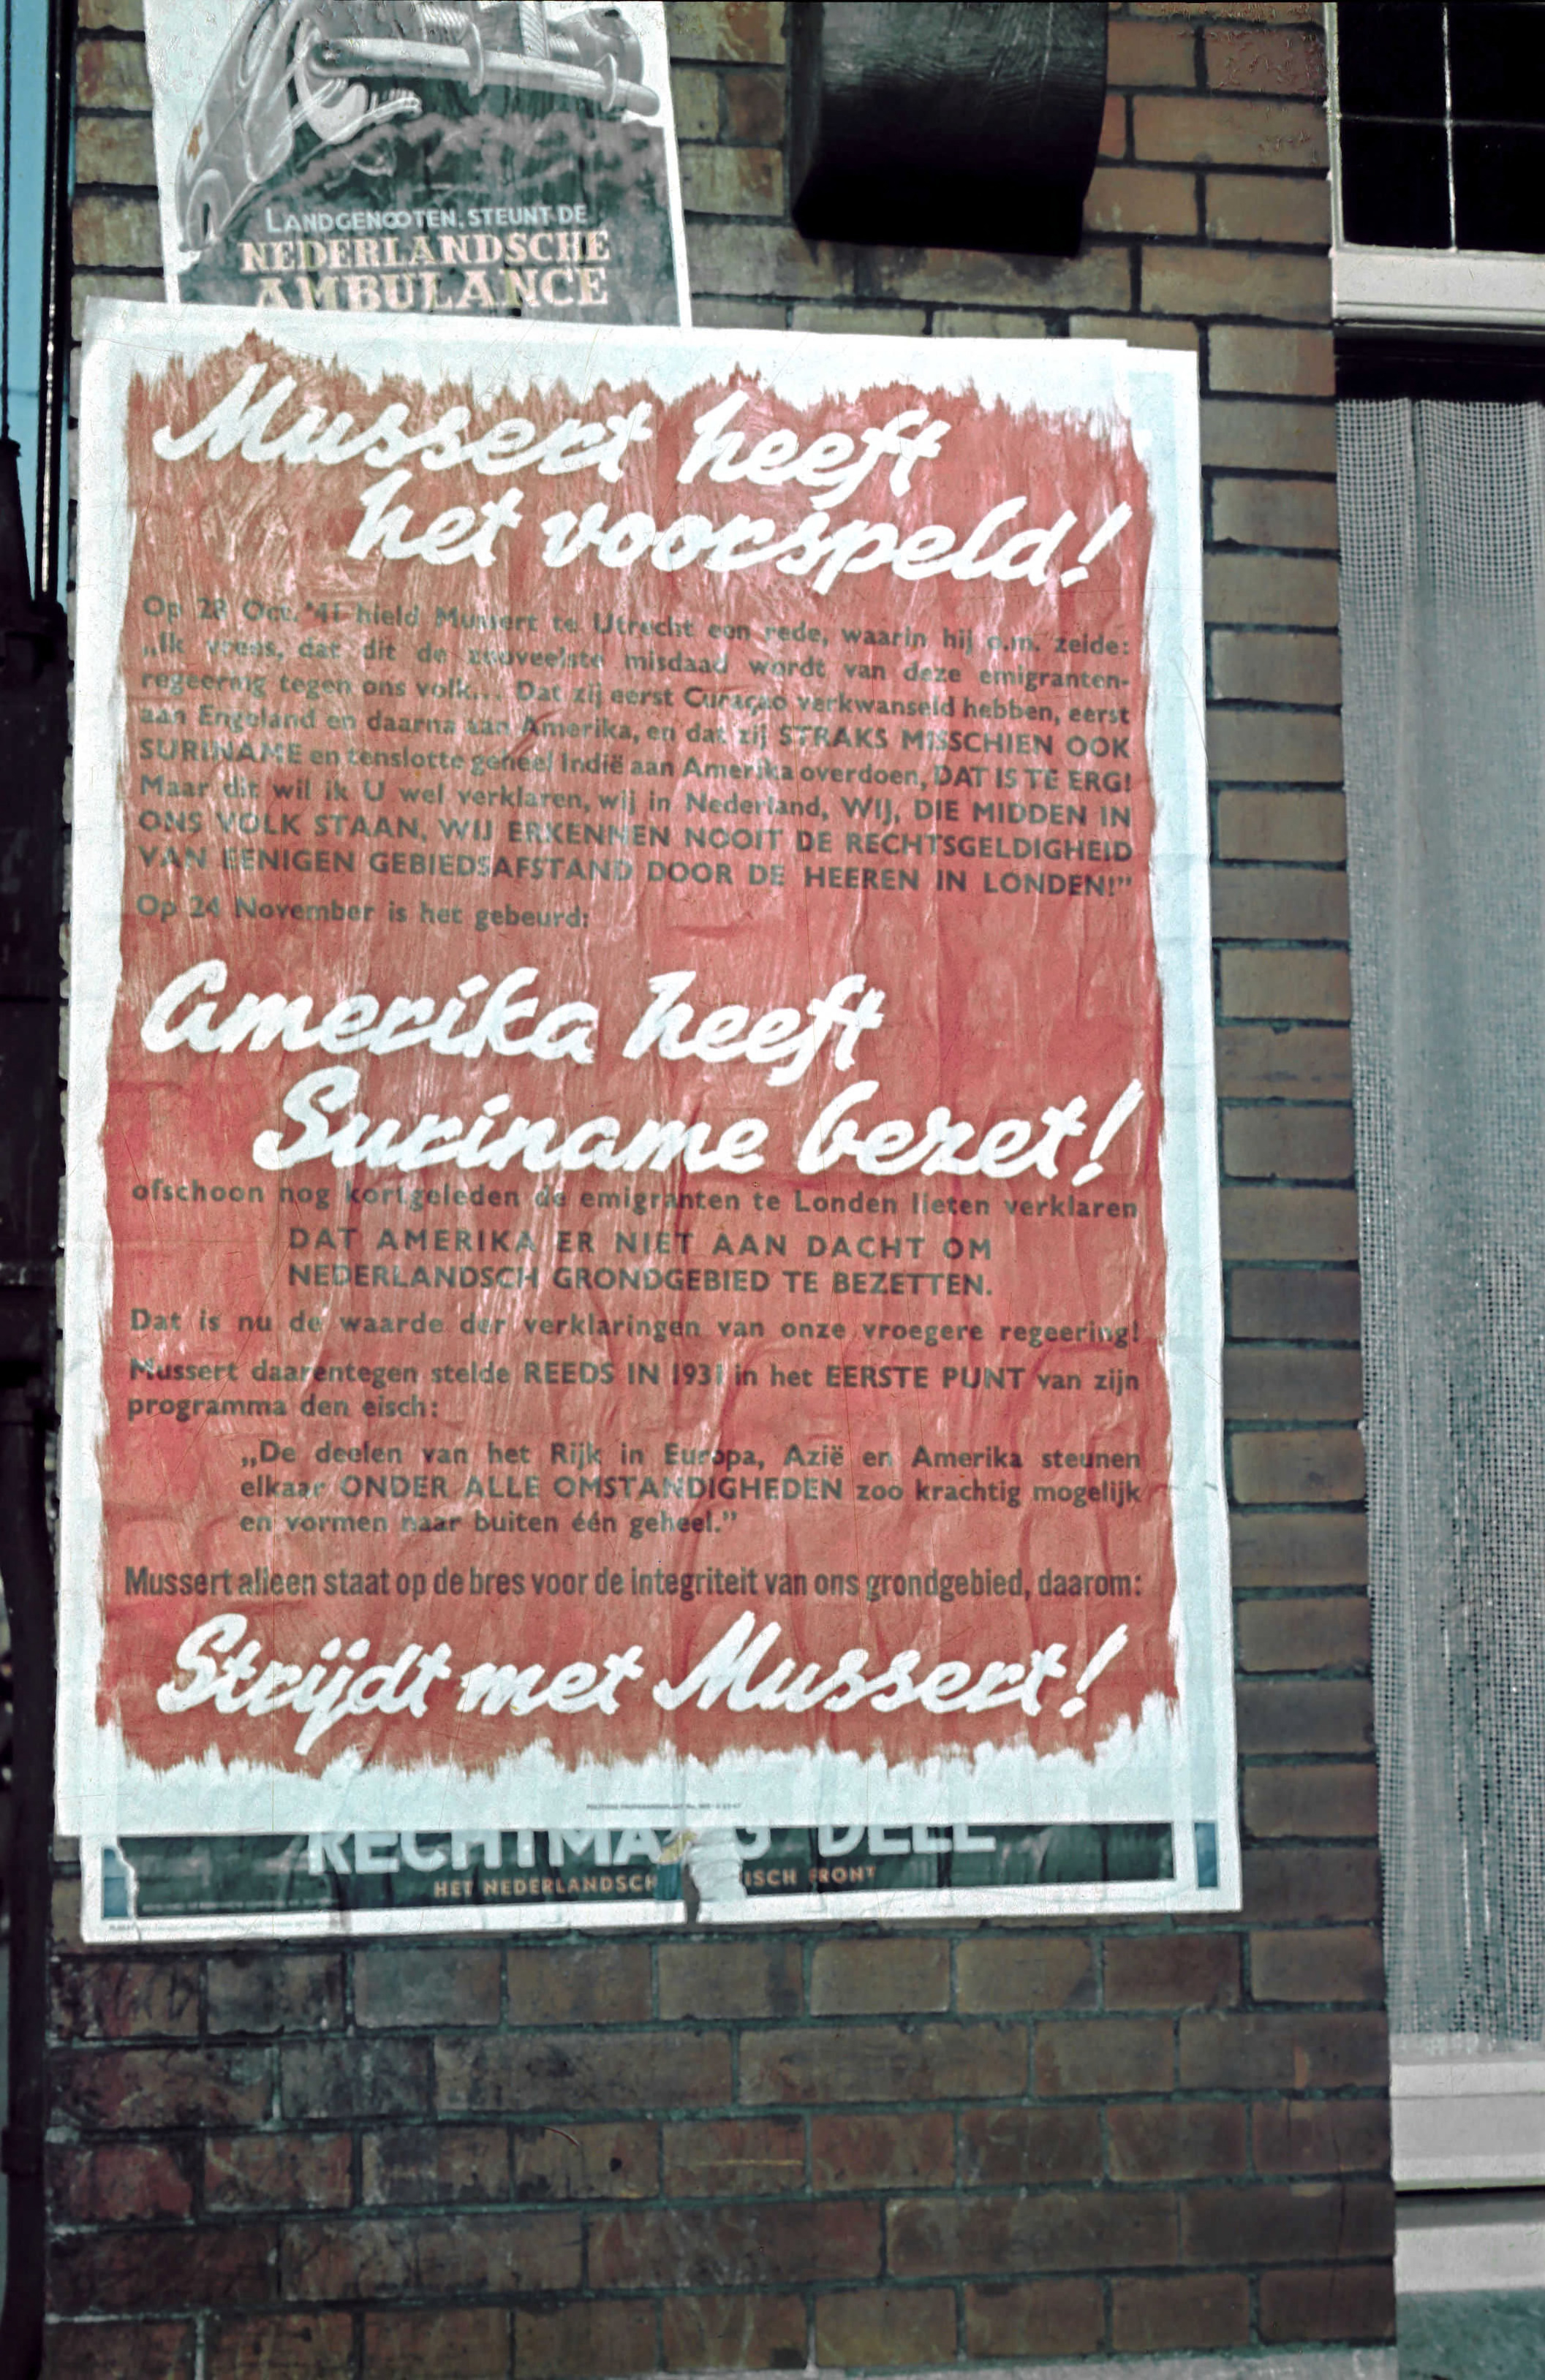 NSB-leider Mussert zette een grote campagne op tegen de Amerikaanse 'bezetting' van Suriname eind 1941.